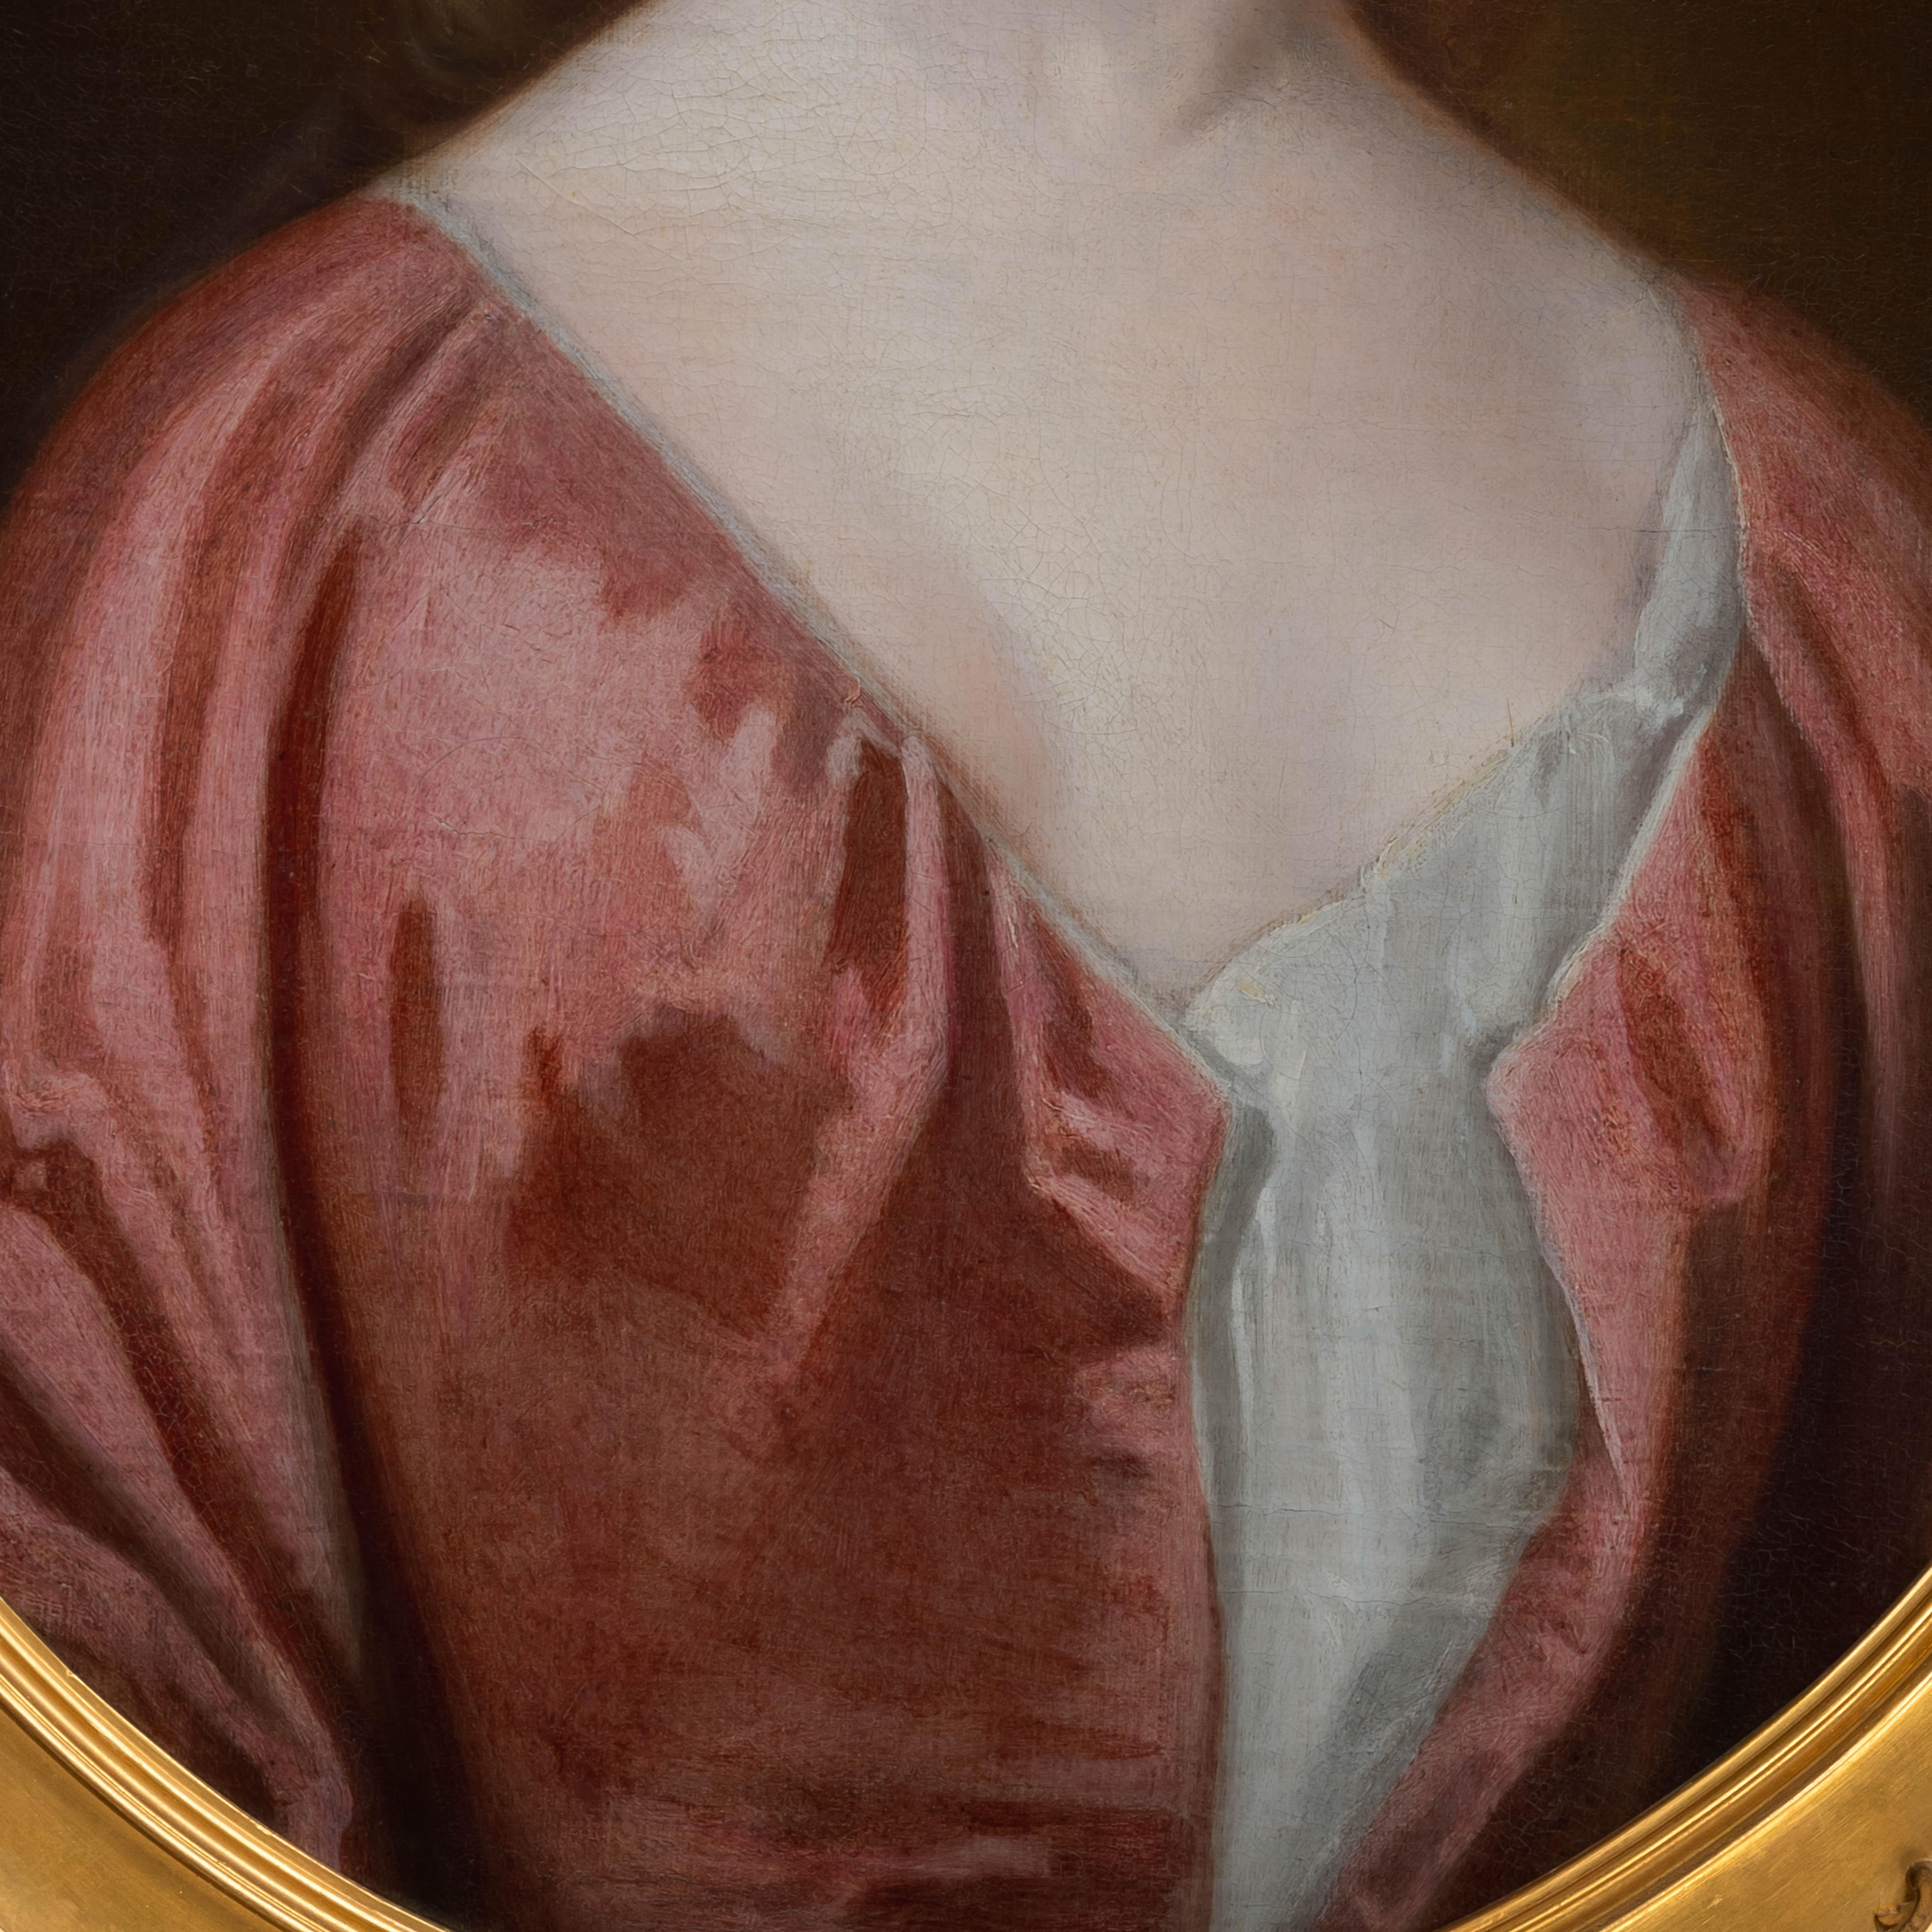 Dieses schöne Porträt wurde um 1725 gemalt und ist ein schönes Beispiel für den englischen Porträtstil des achtzehnten Jahrhunderts.  Der Künstler hat sich dafür entschieden, die Dame vor einem schlichten Hintergrund in einem einfachen roten